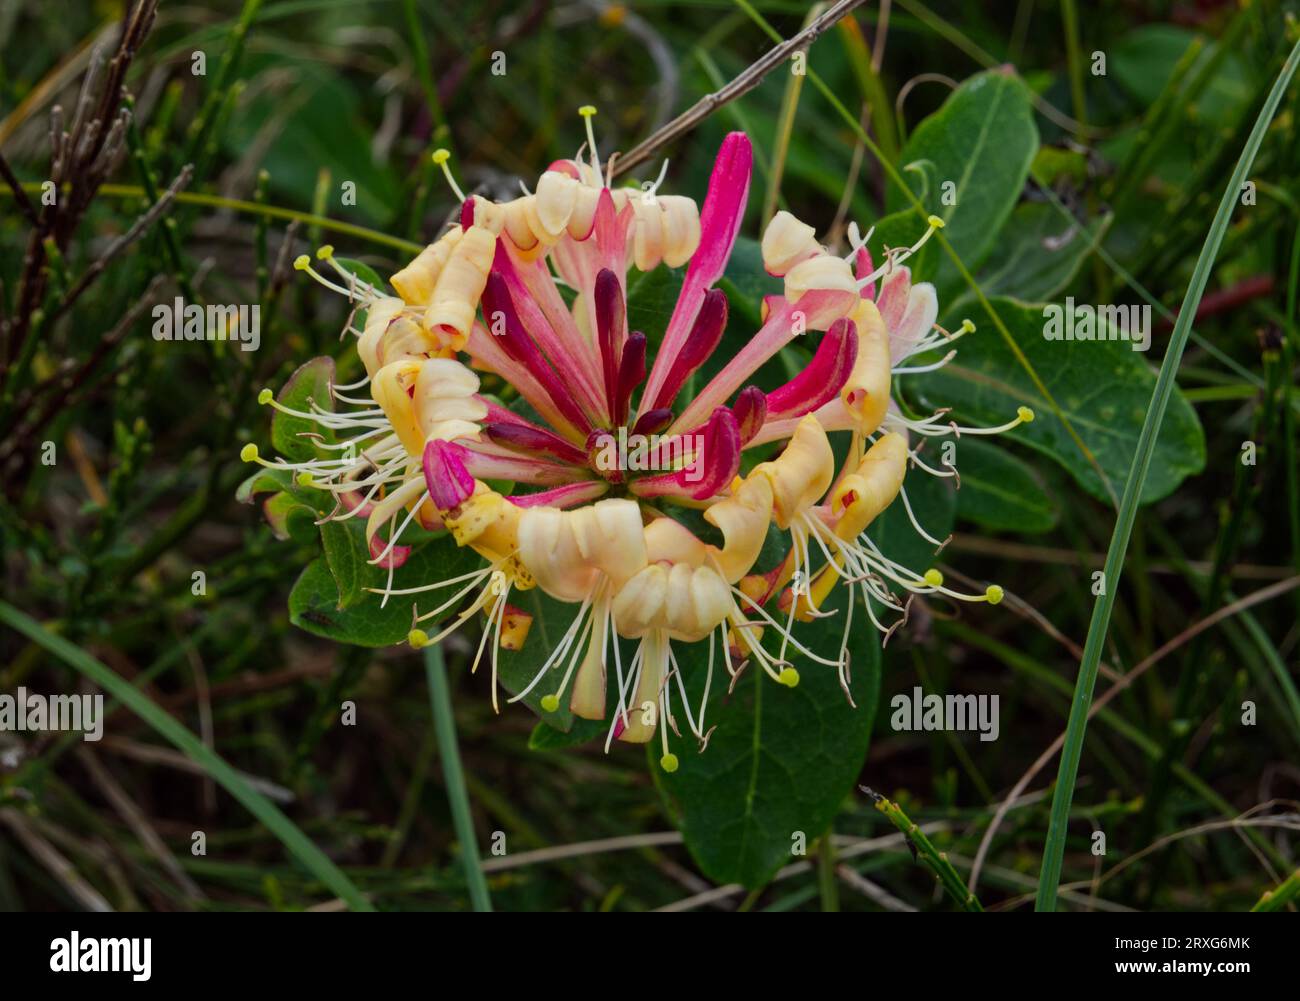 Italian honeysuckle (Lonicera caprifolium) flower Stock Photo